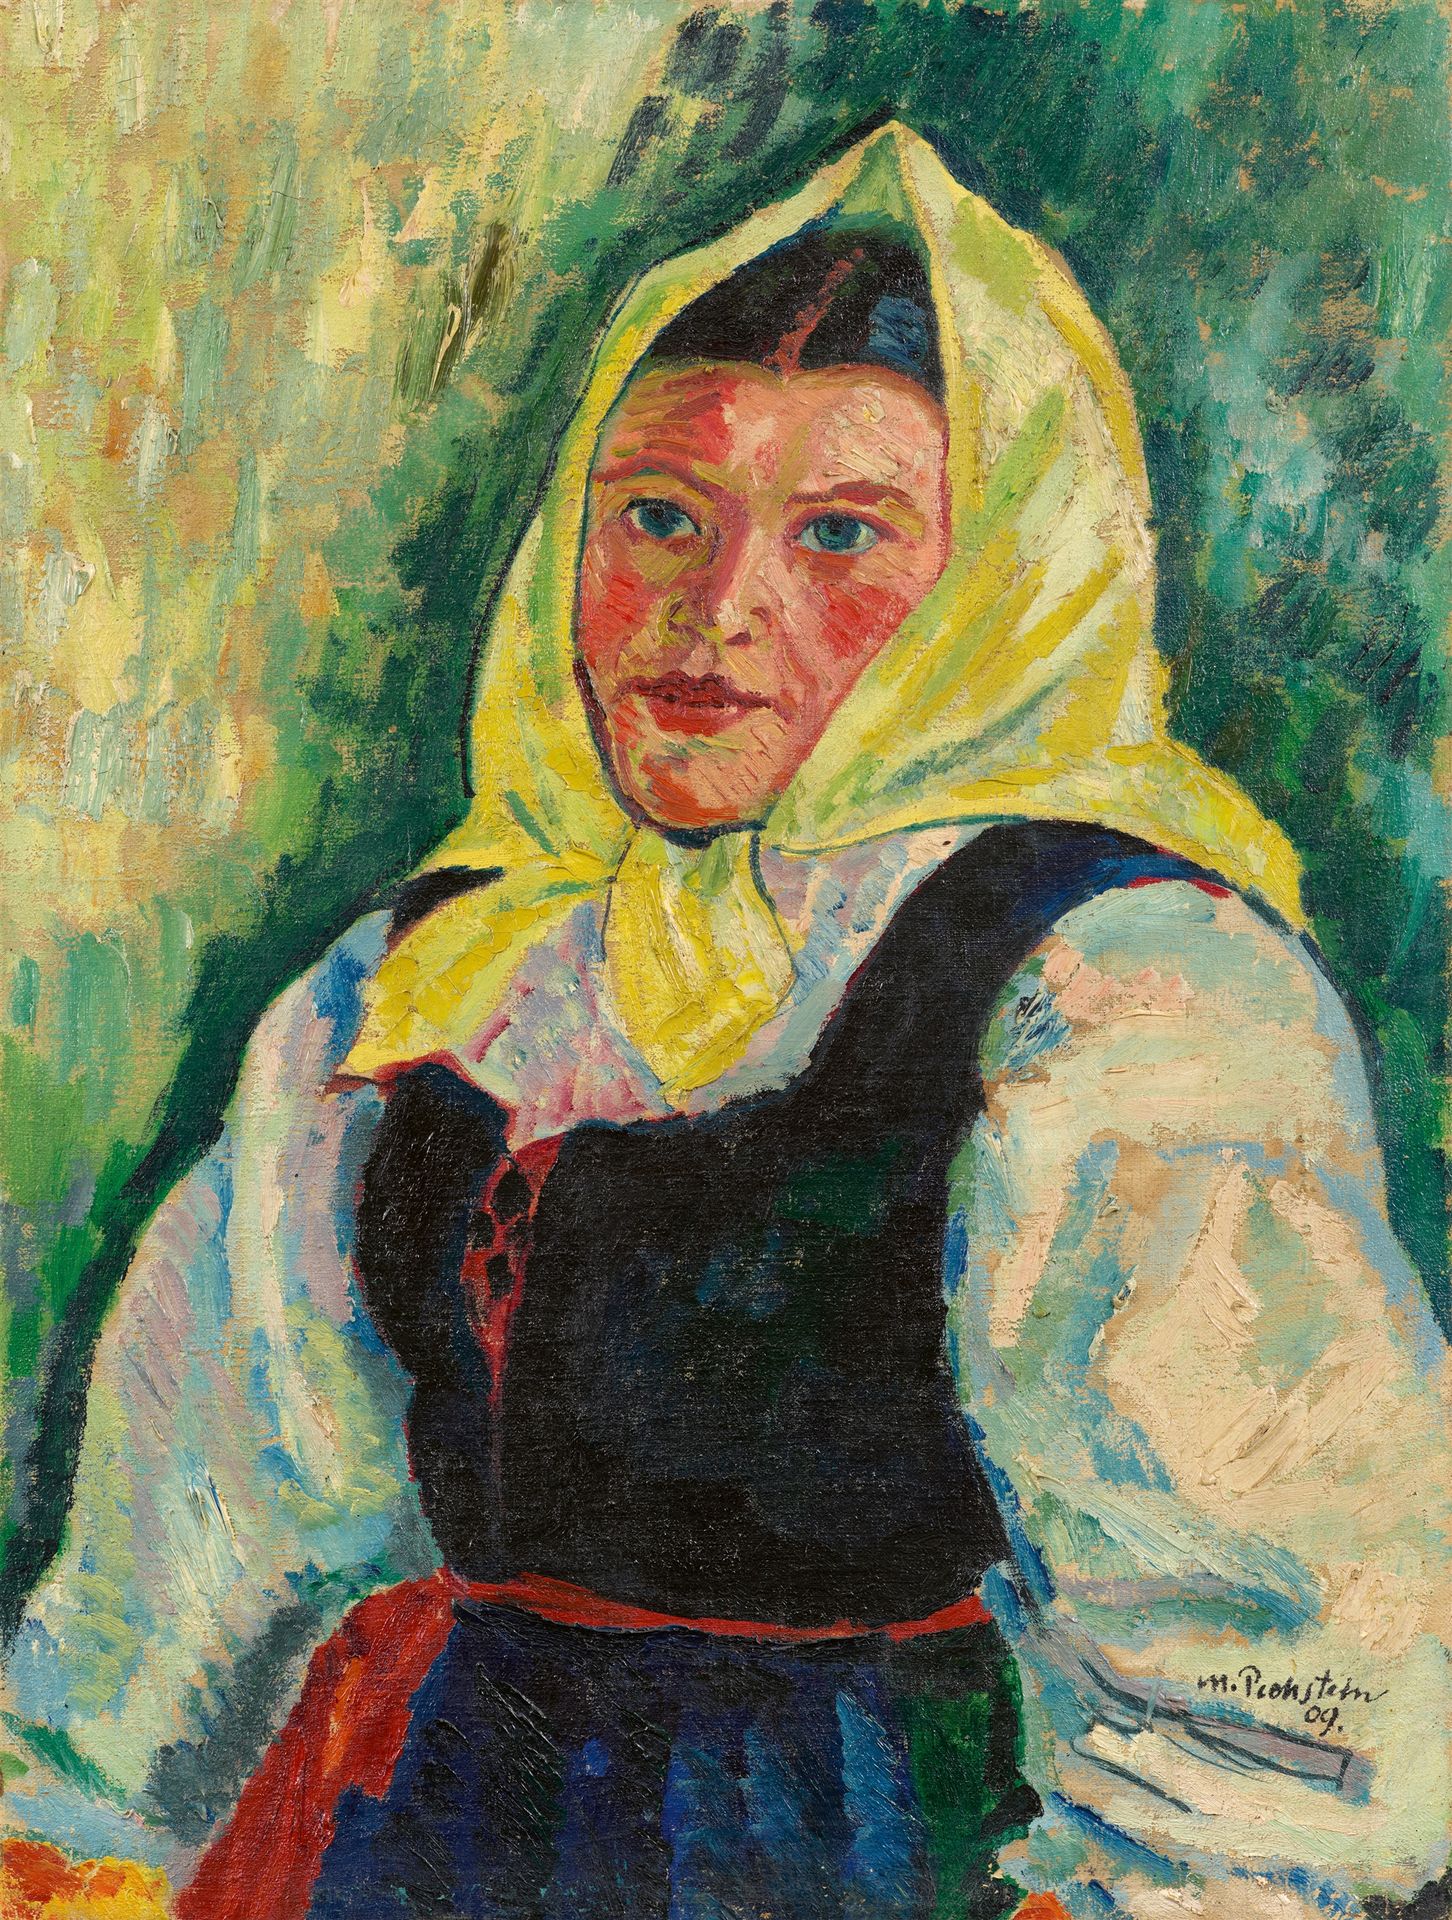 Hermann Max Pechstein Hermann Max Pechstein



来自尼丁的农夫的妻子

1909



布面油画。65 x 49.&hellip;